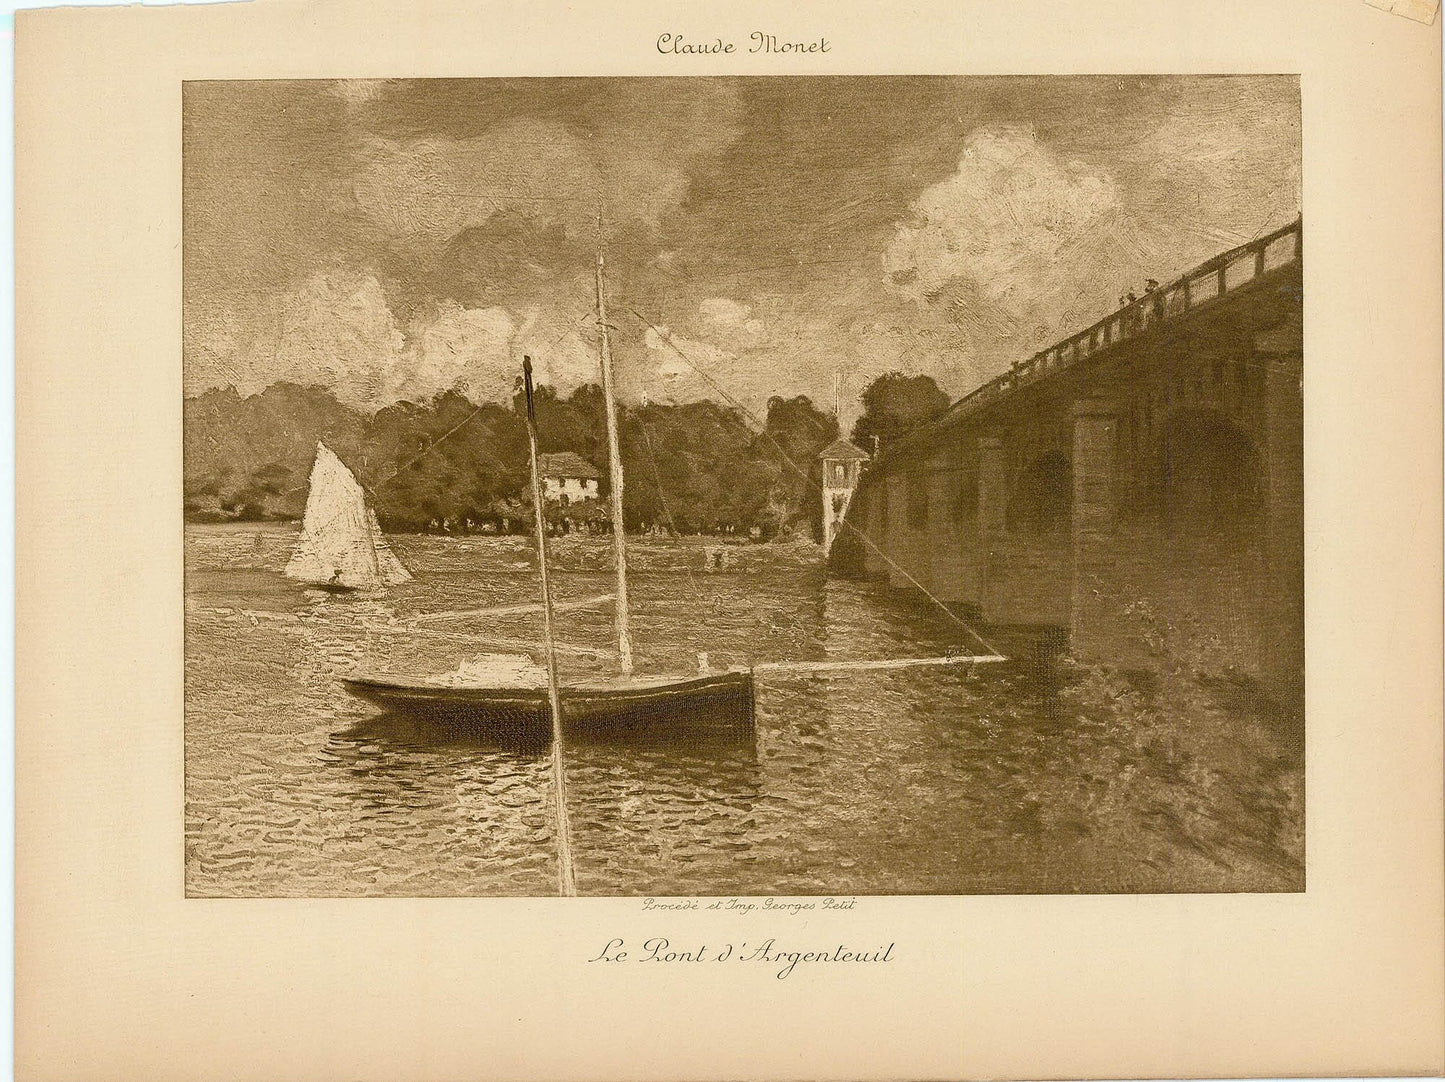 Claude Monet - Pont d’Argenteuil